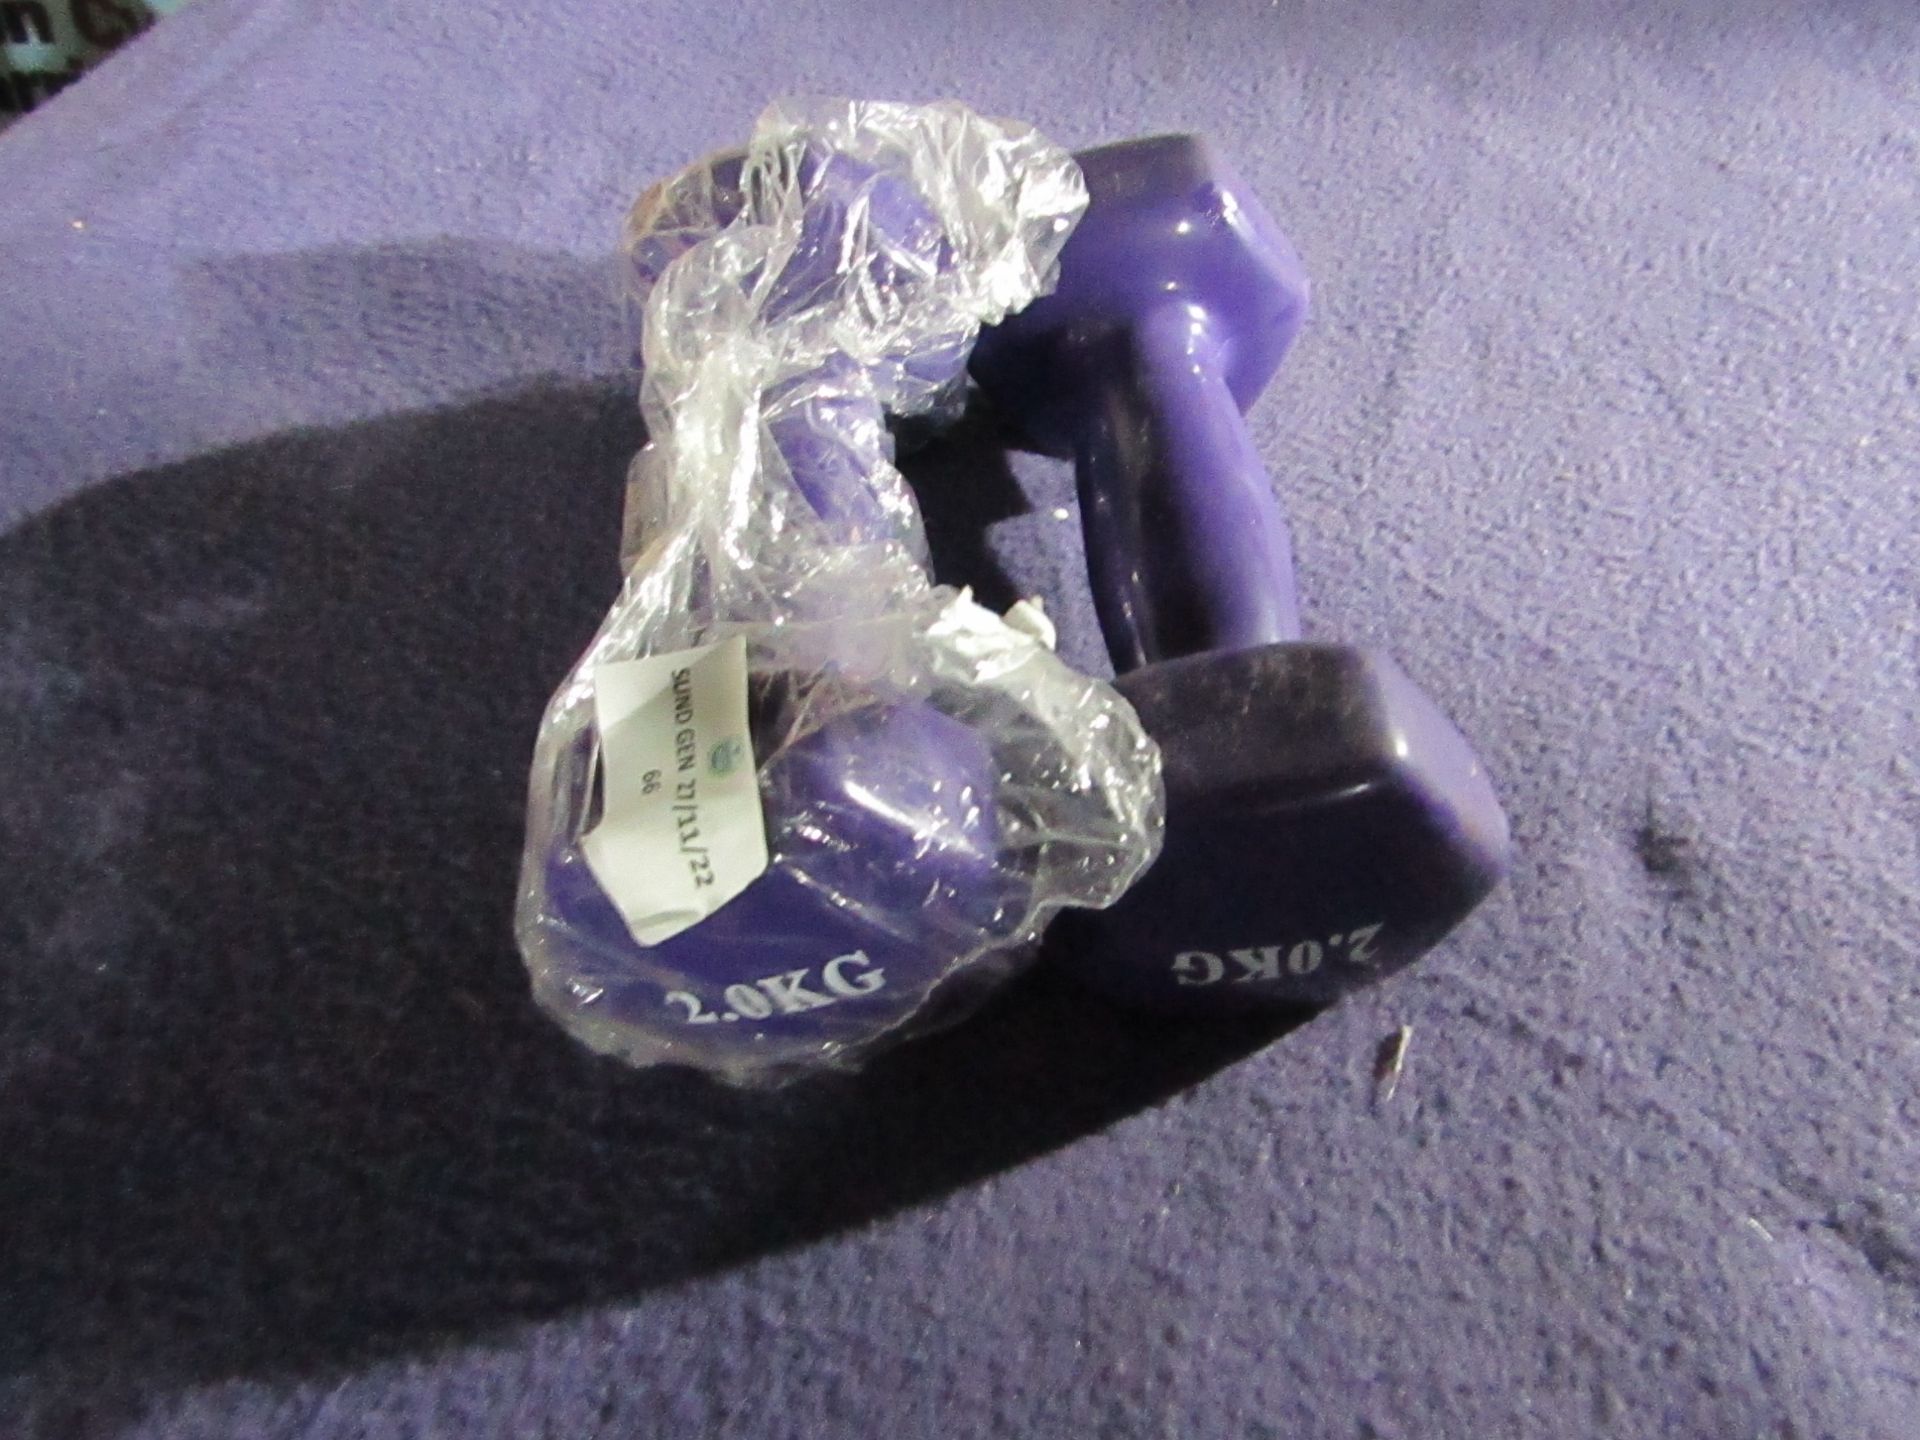 4x Non-Slip Fitness Dumbbells (2x 2KG Purple) - New & Packaged.